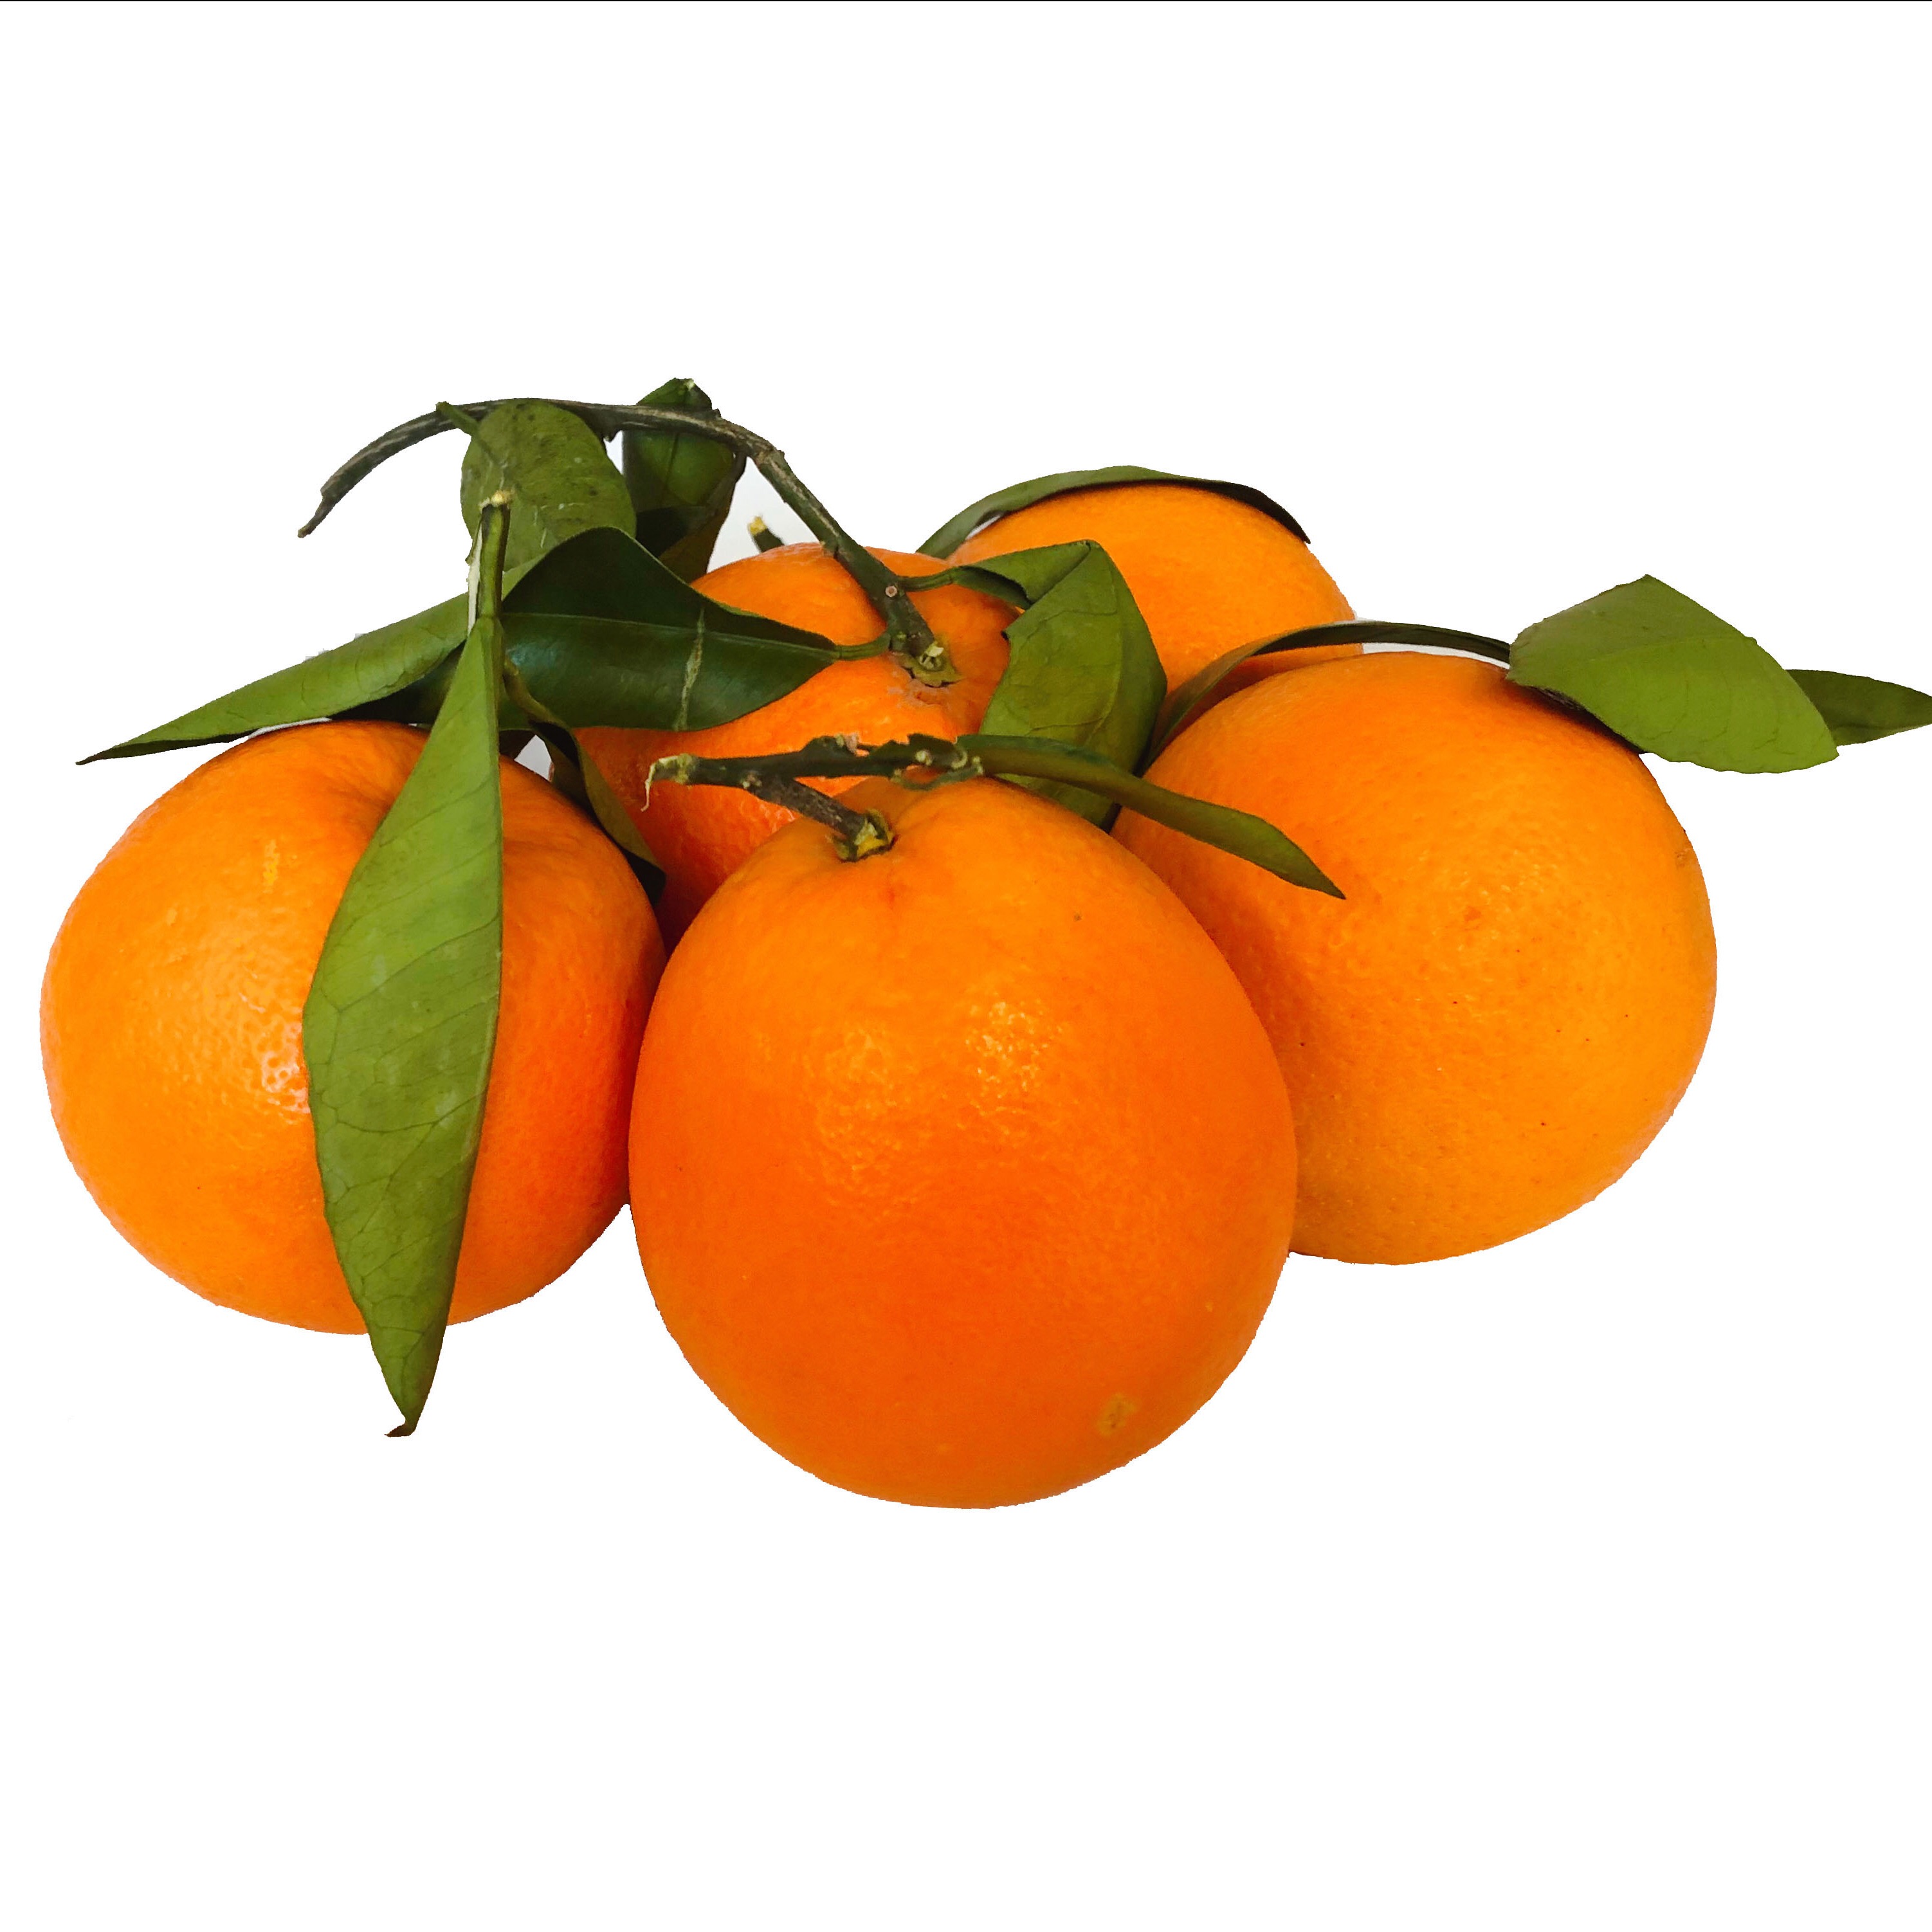 重庆直发 奉节脐橙4斤装 拼2件发10斤 果径70-80mm 新鲜水果